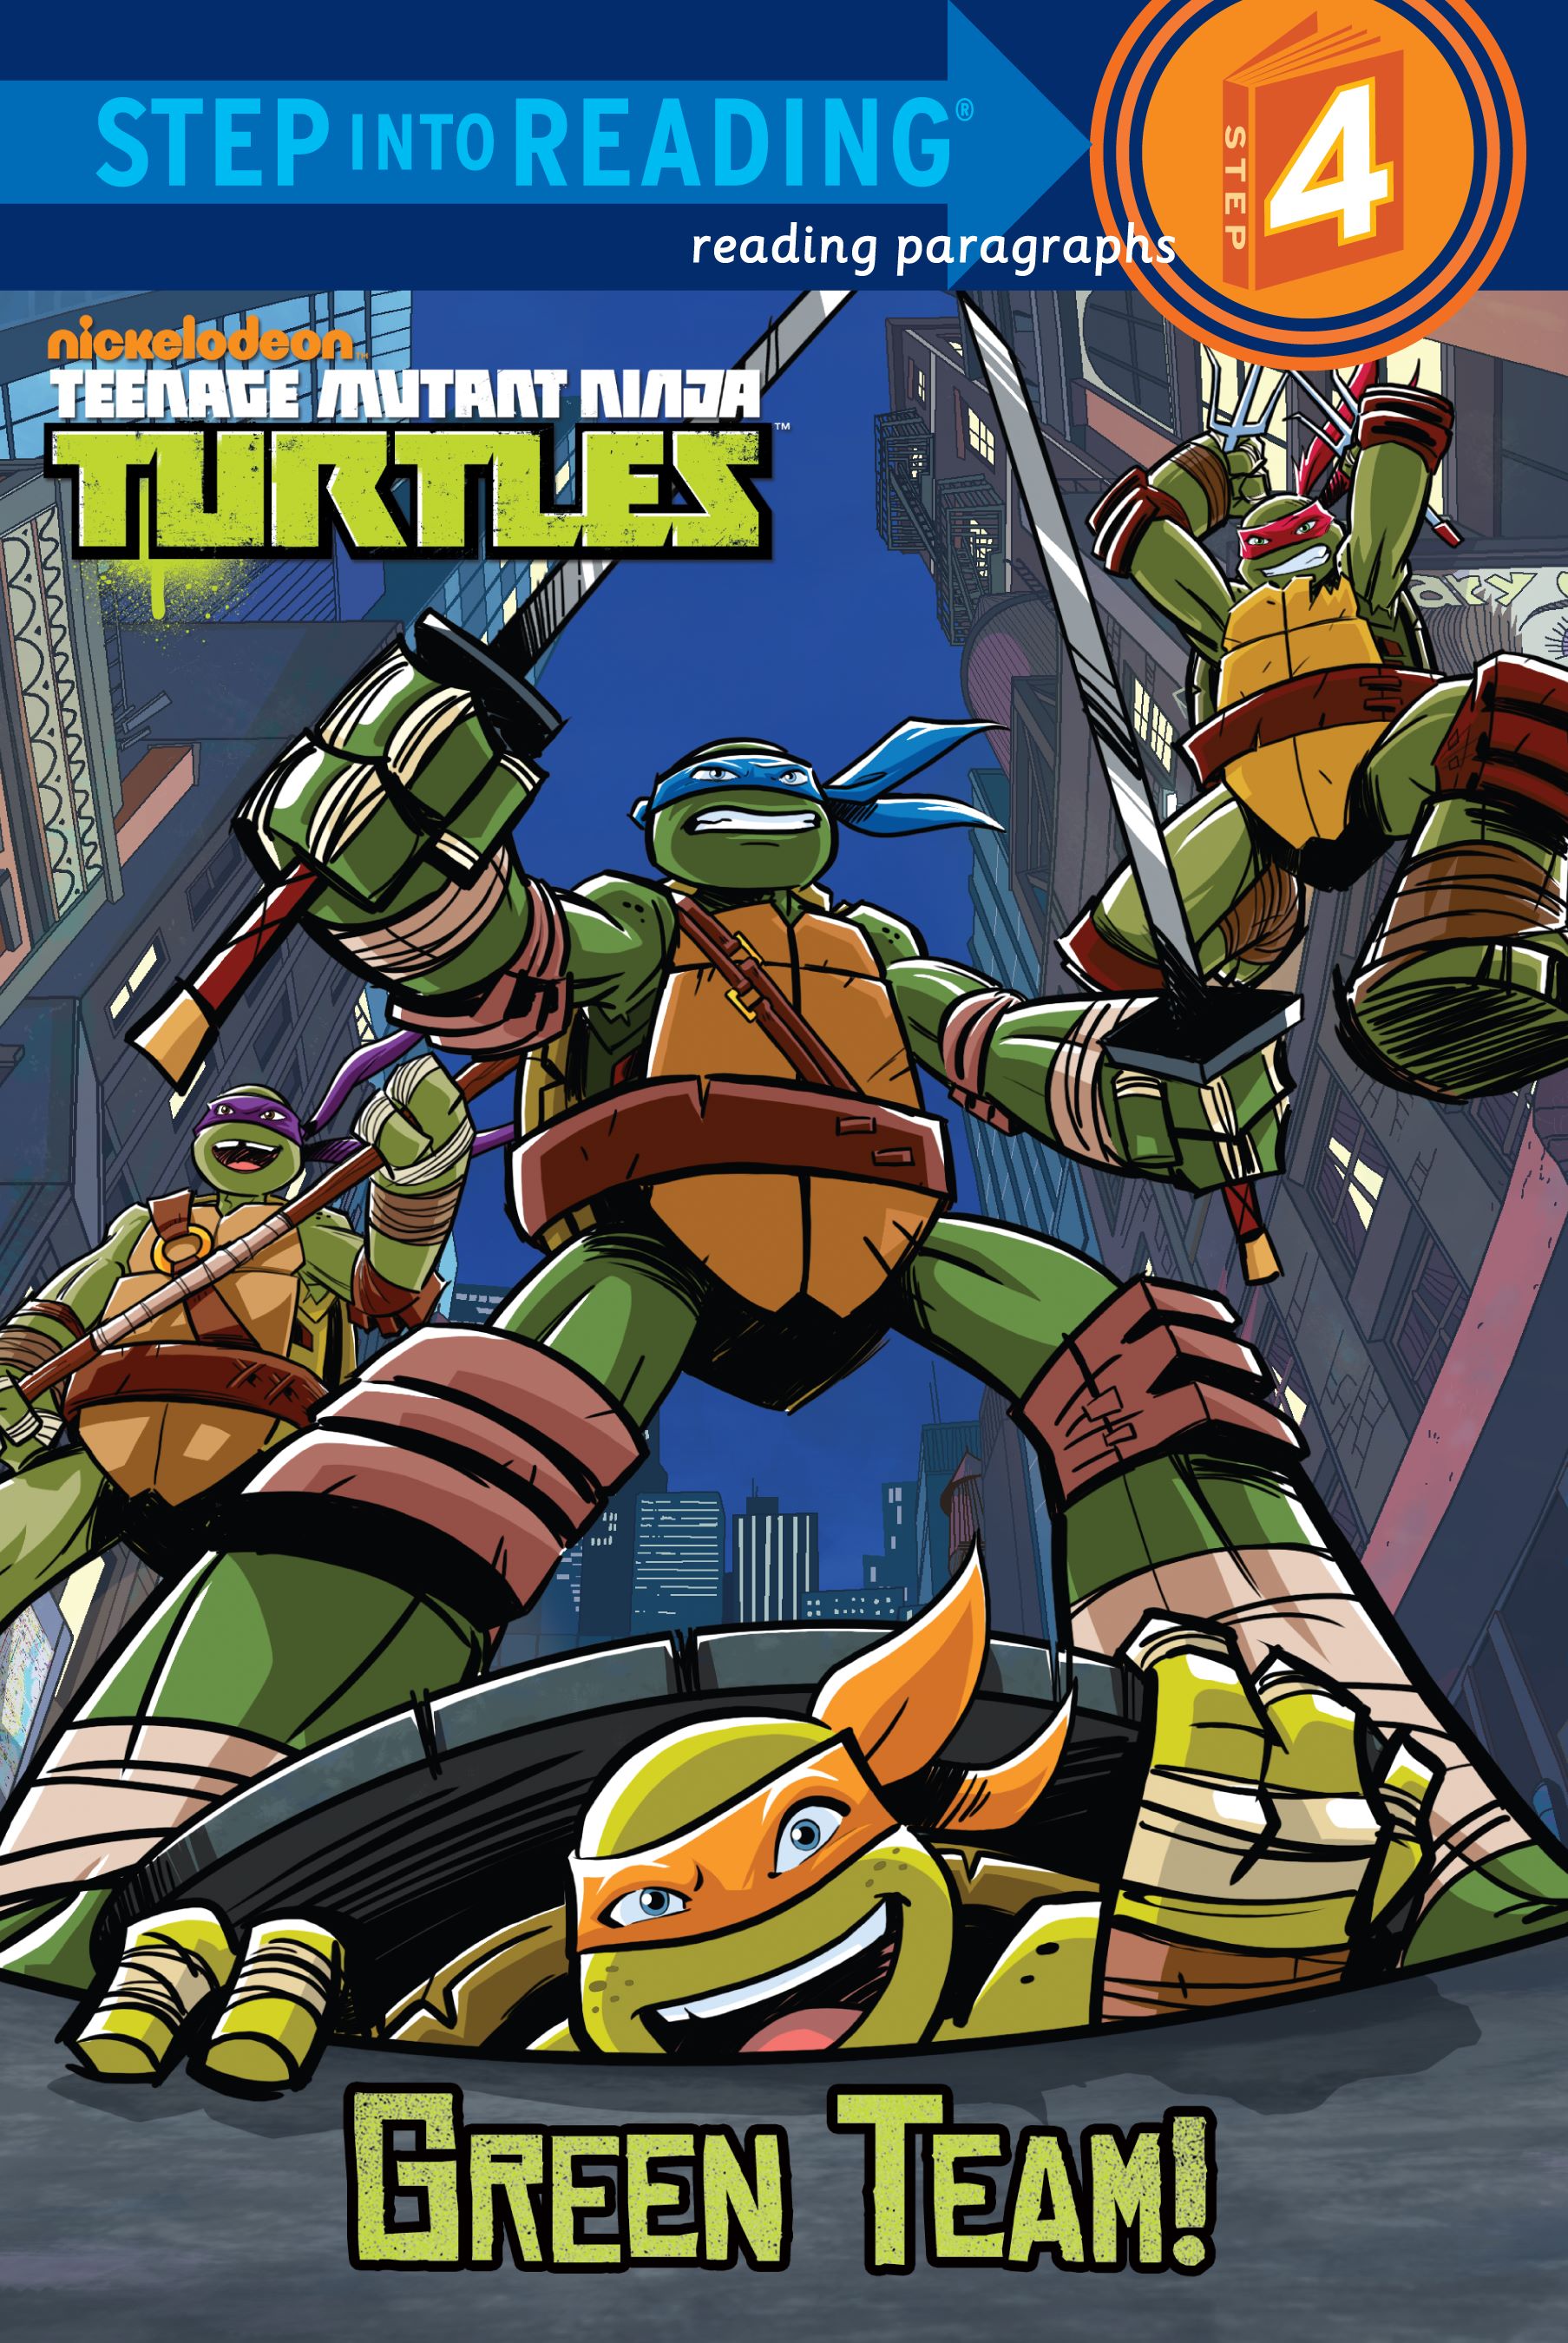 Teenage Mutant Ninja Turtles Green Team!